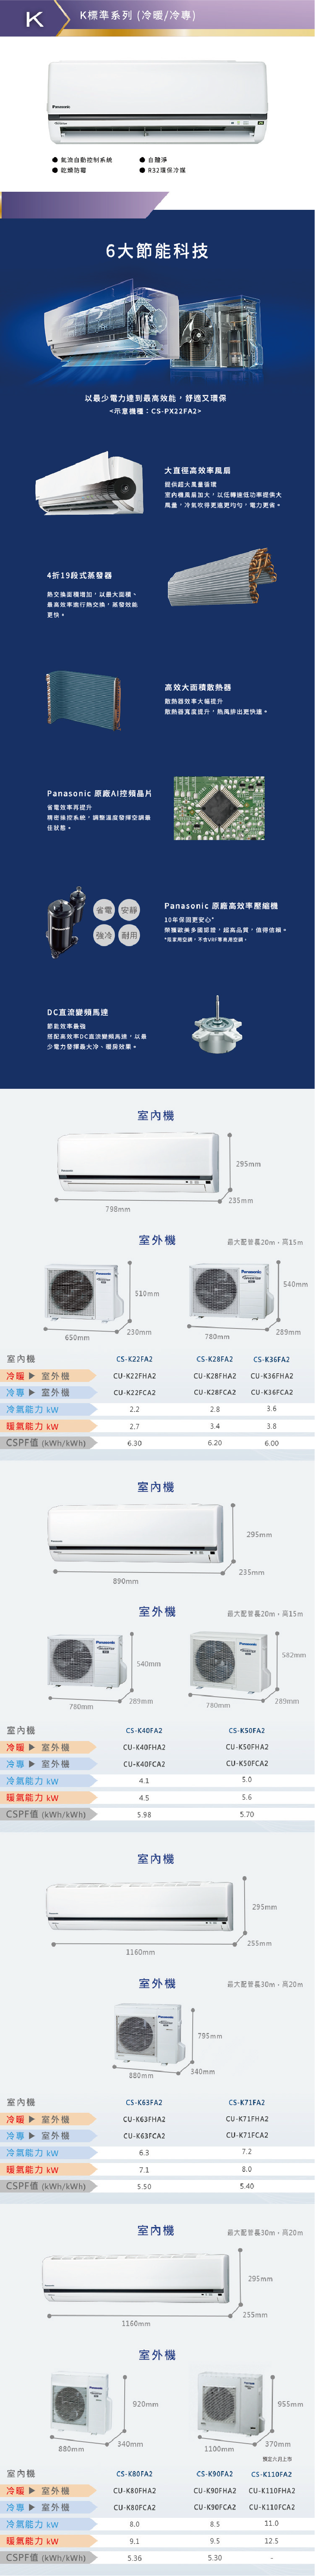 CU-K90FHA2 16坪適用 K系列 一對一 分離式 變頻 冷暖 冷氣 CS-K90FA2